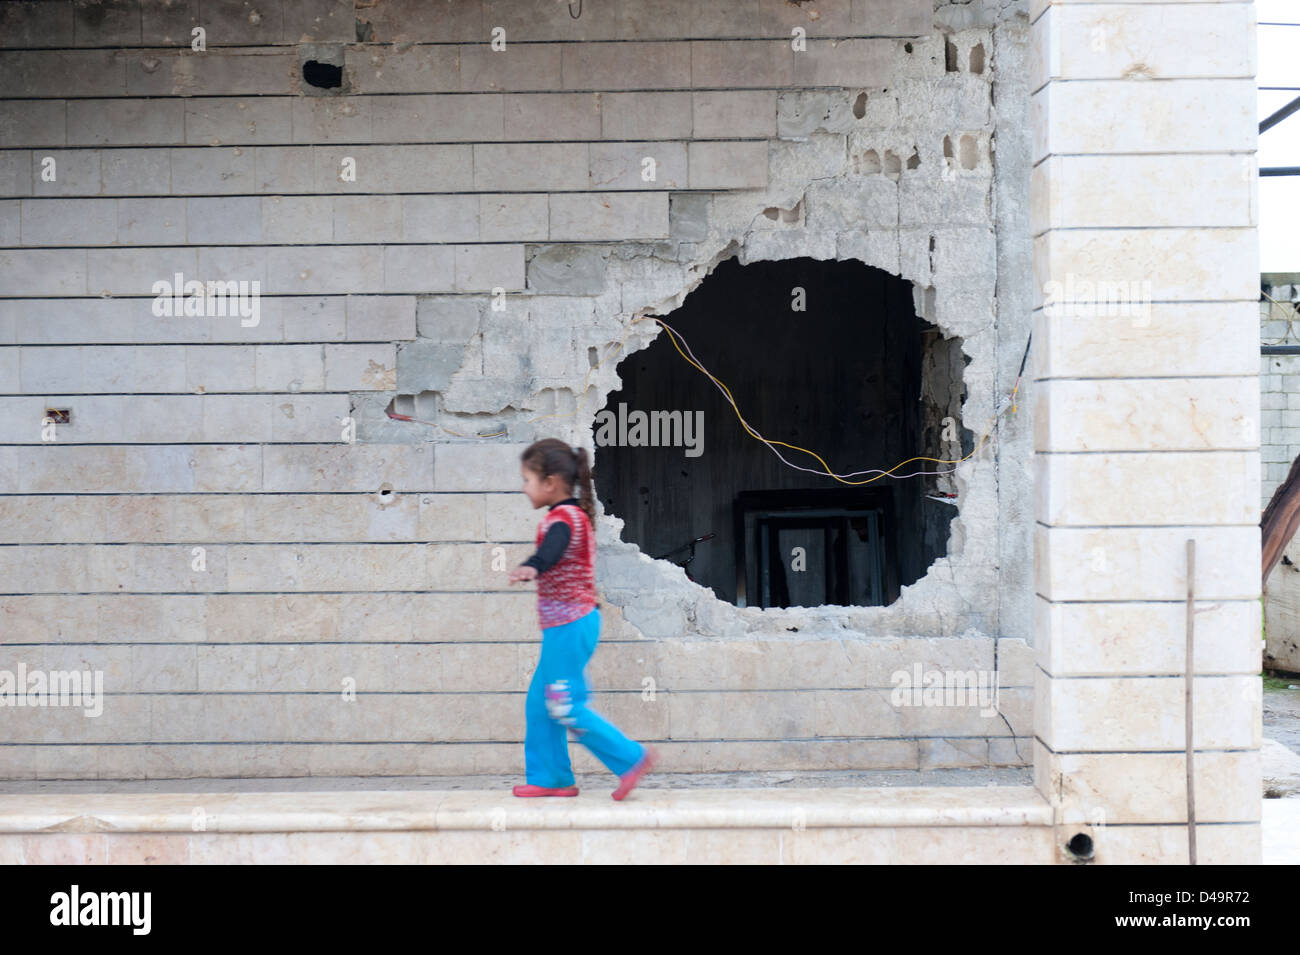 Una città distrutta dal regime di Assad, Apamea, Siria Foto Stock